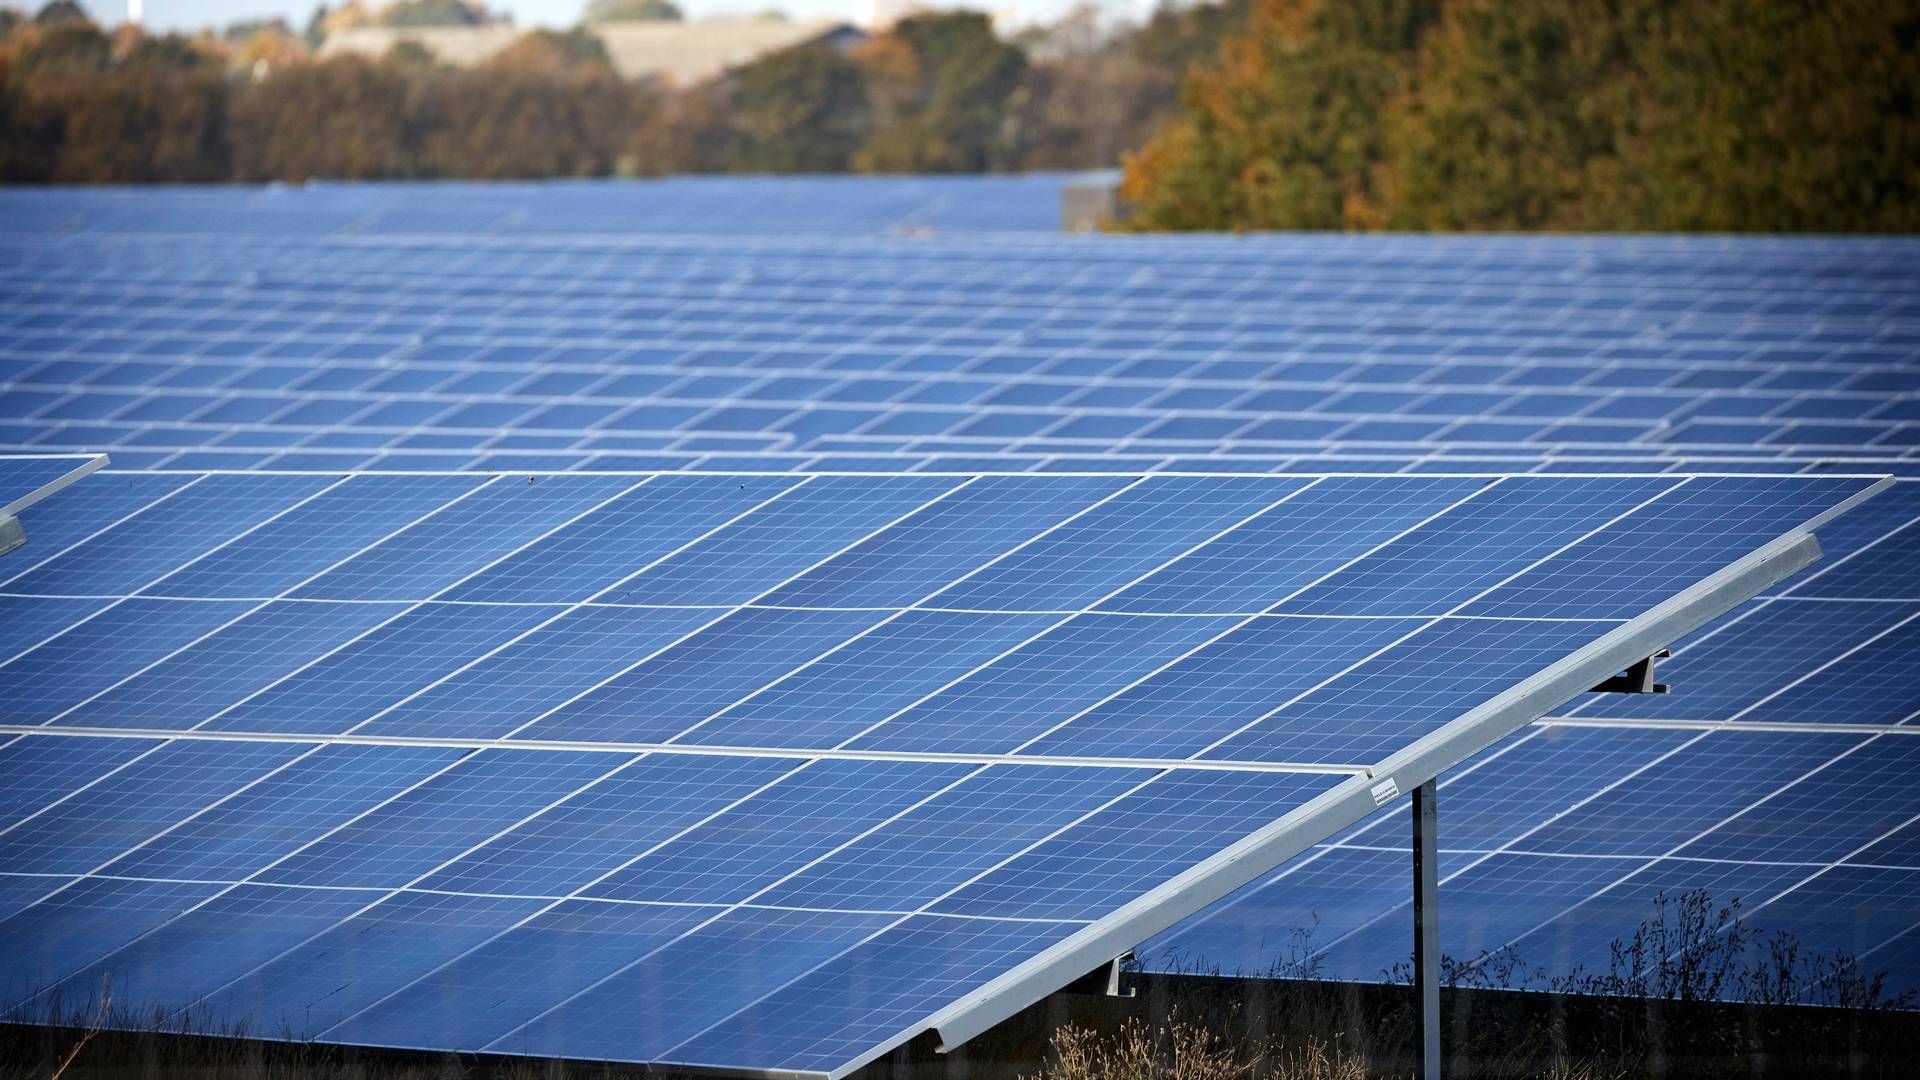 Omstillingen til grønne energiformer, såsom solceller, kræver forsikringsdækninger, som indtil for relativt nylig har været ukendte for forsikringssektoren, påpeger forsikringsmægler. | Foto: Jens Dresling